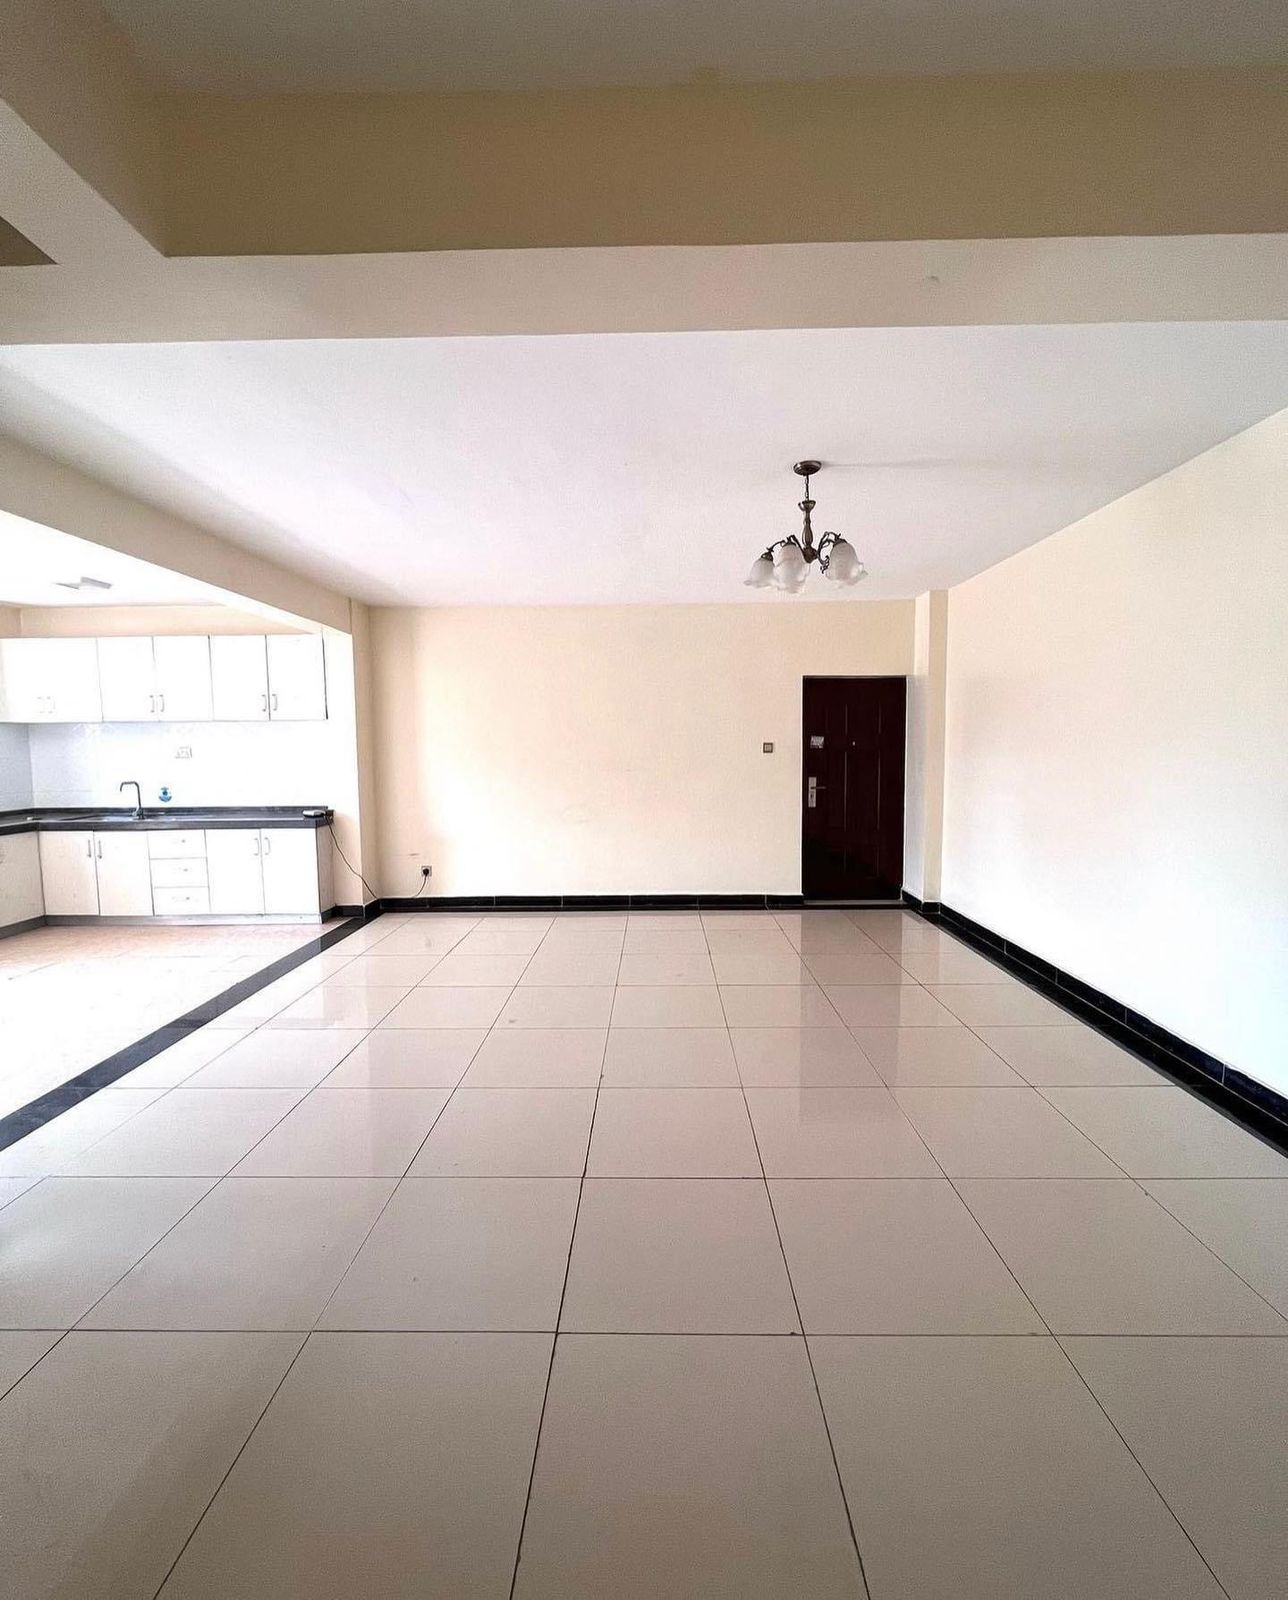 2 Bedroom Apartment Master En-suite at Kilimani for Kshs.65K. Musilli Homes